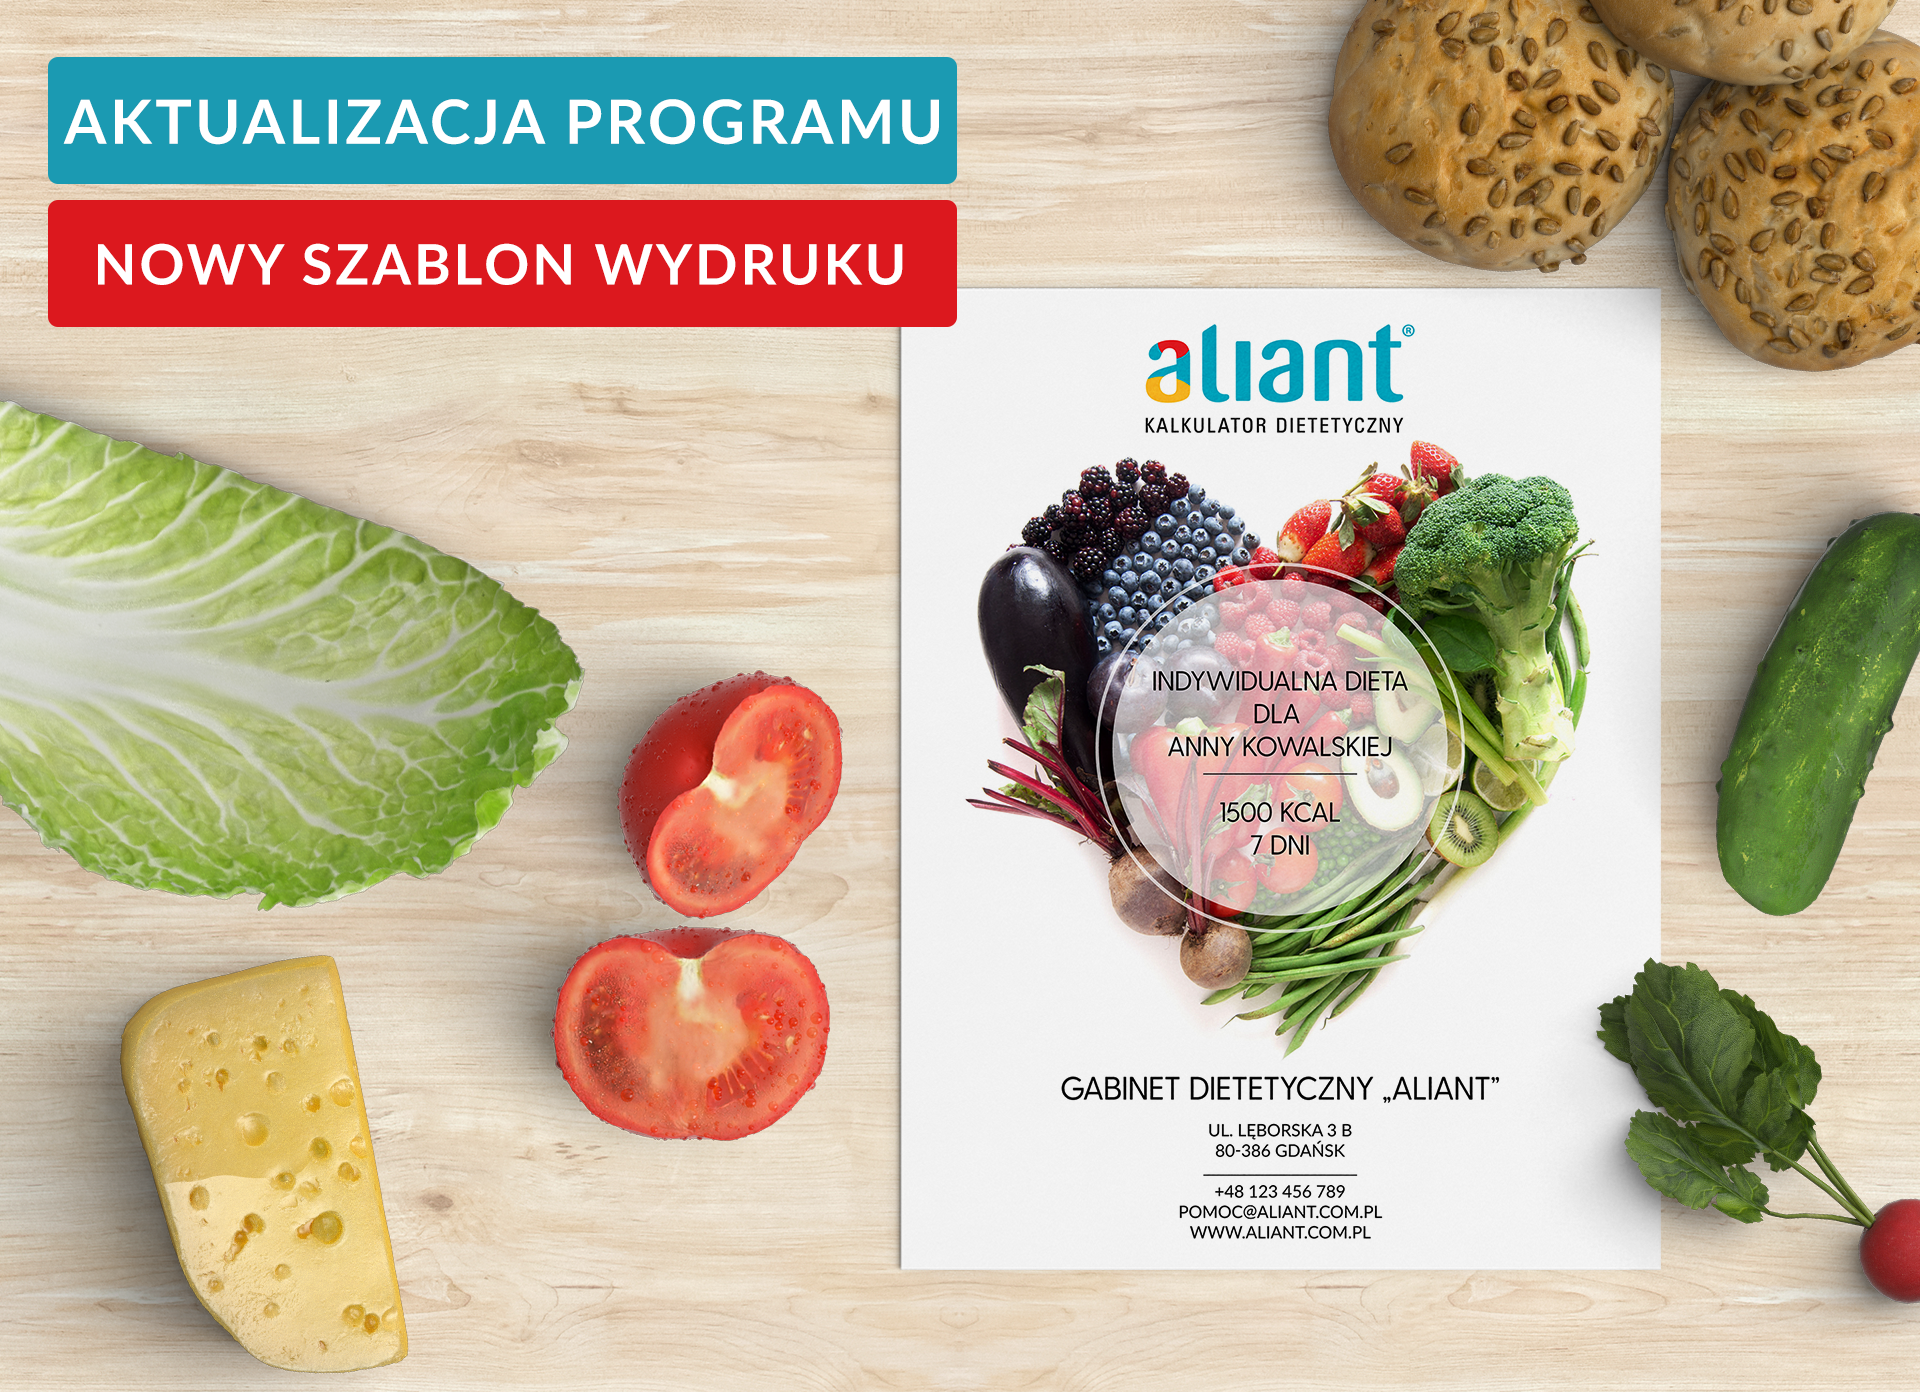 Aktualizacja programu Aliant – 13.12.2019